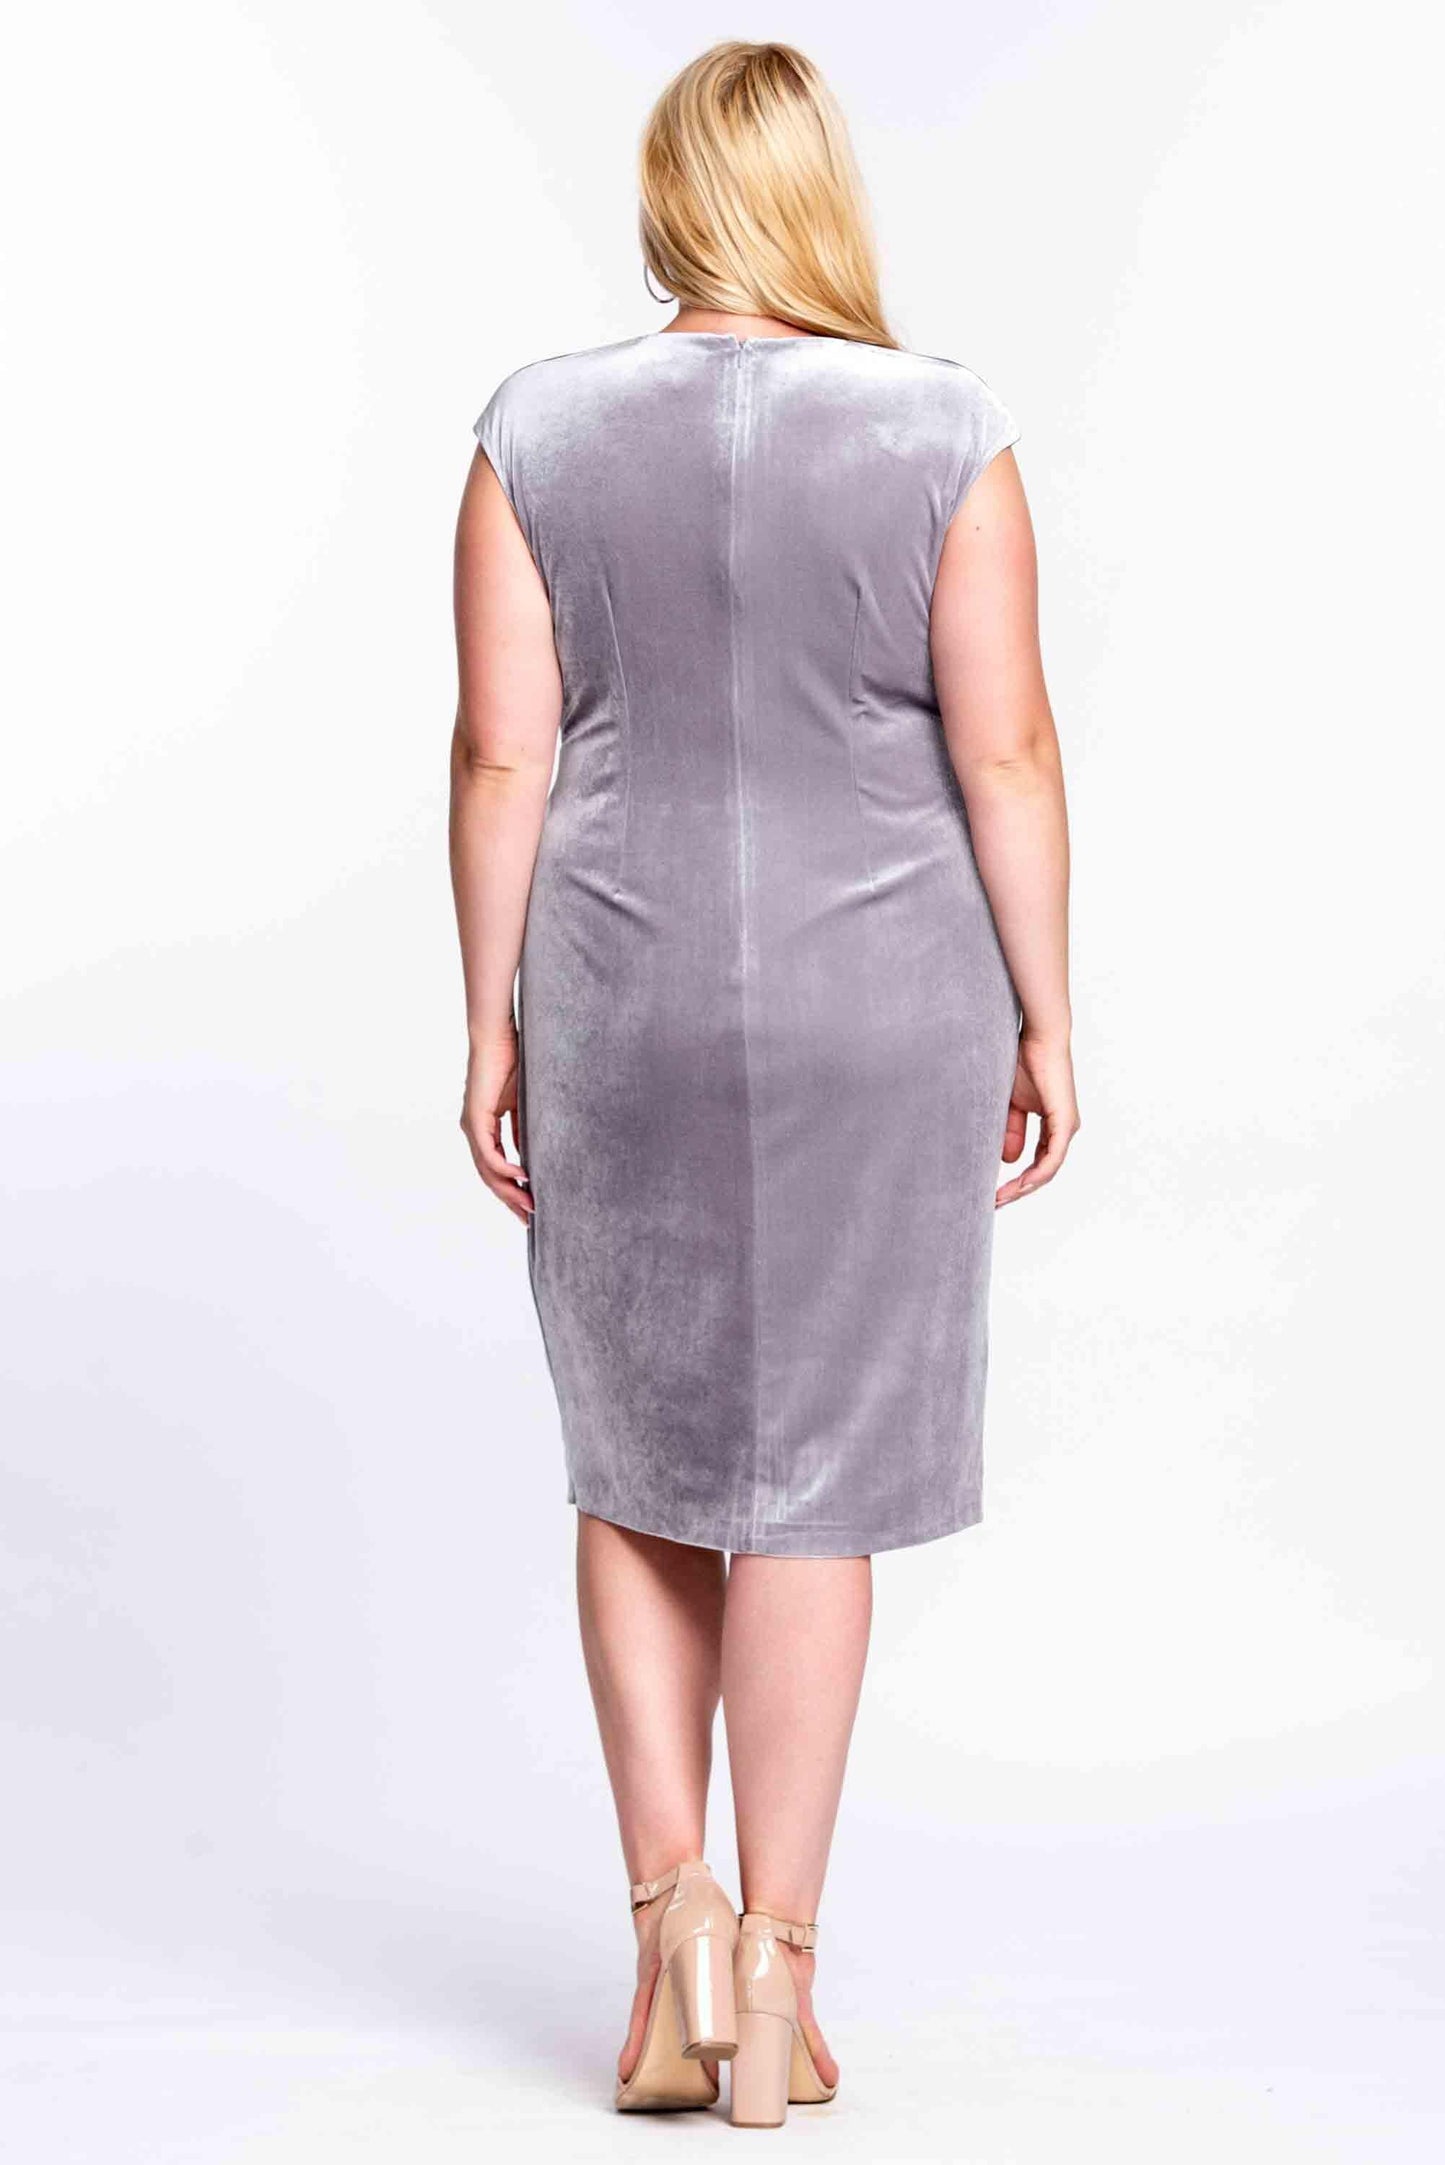 Short Plus Size Short Dress Cocktail - The Dress Outlet